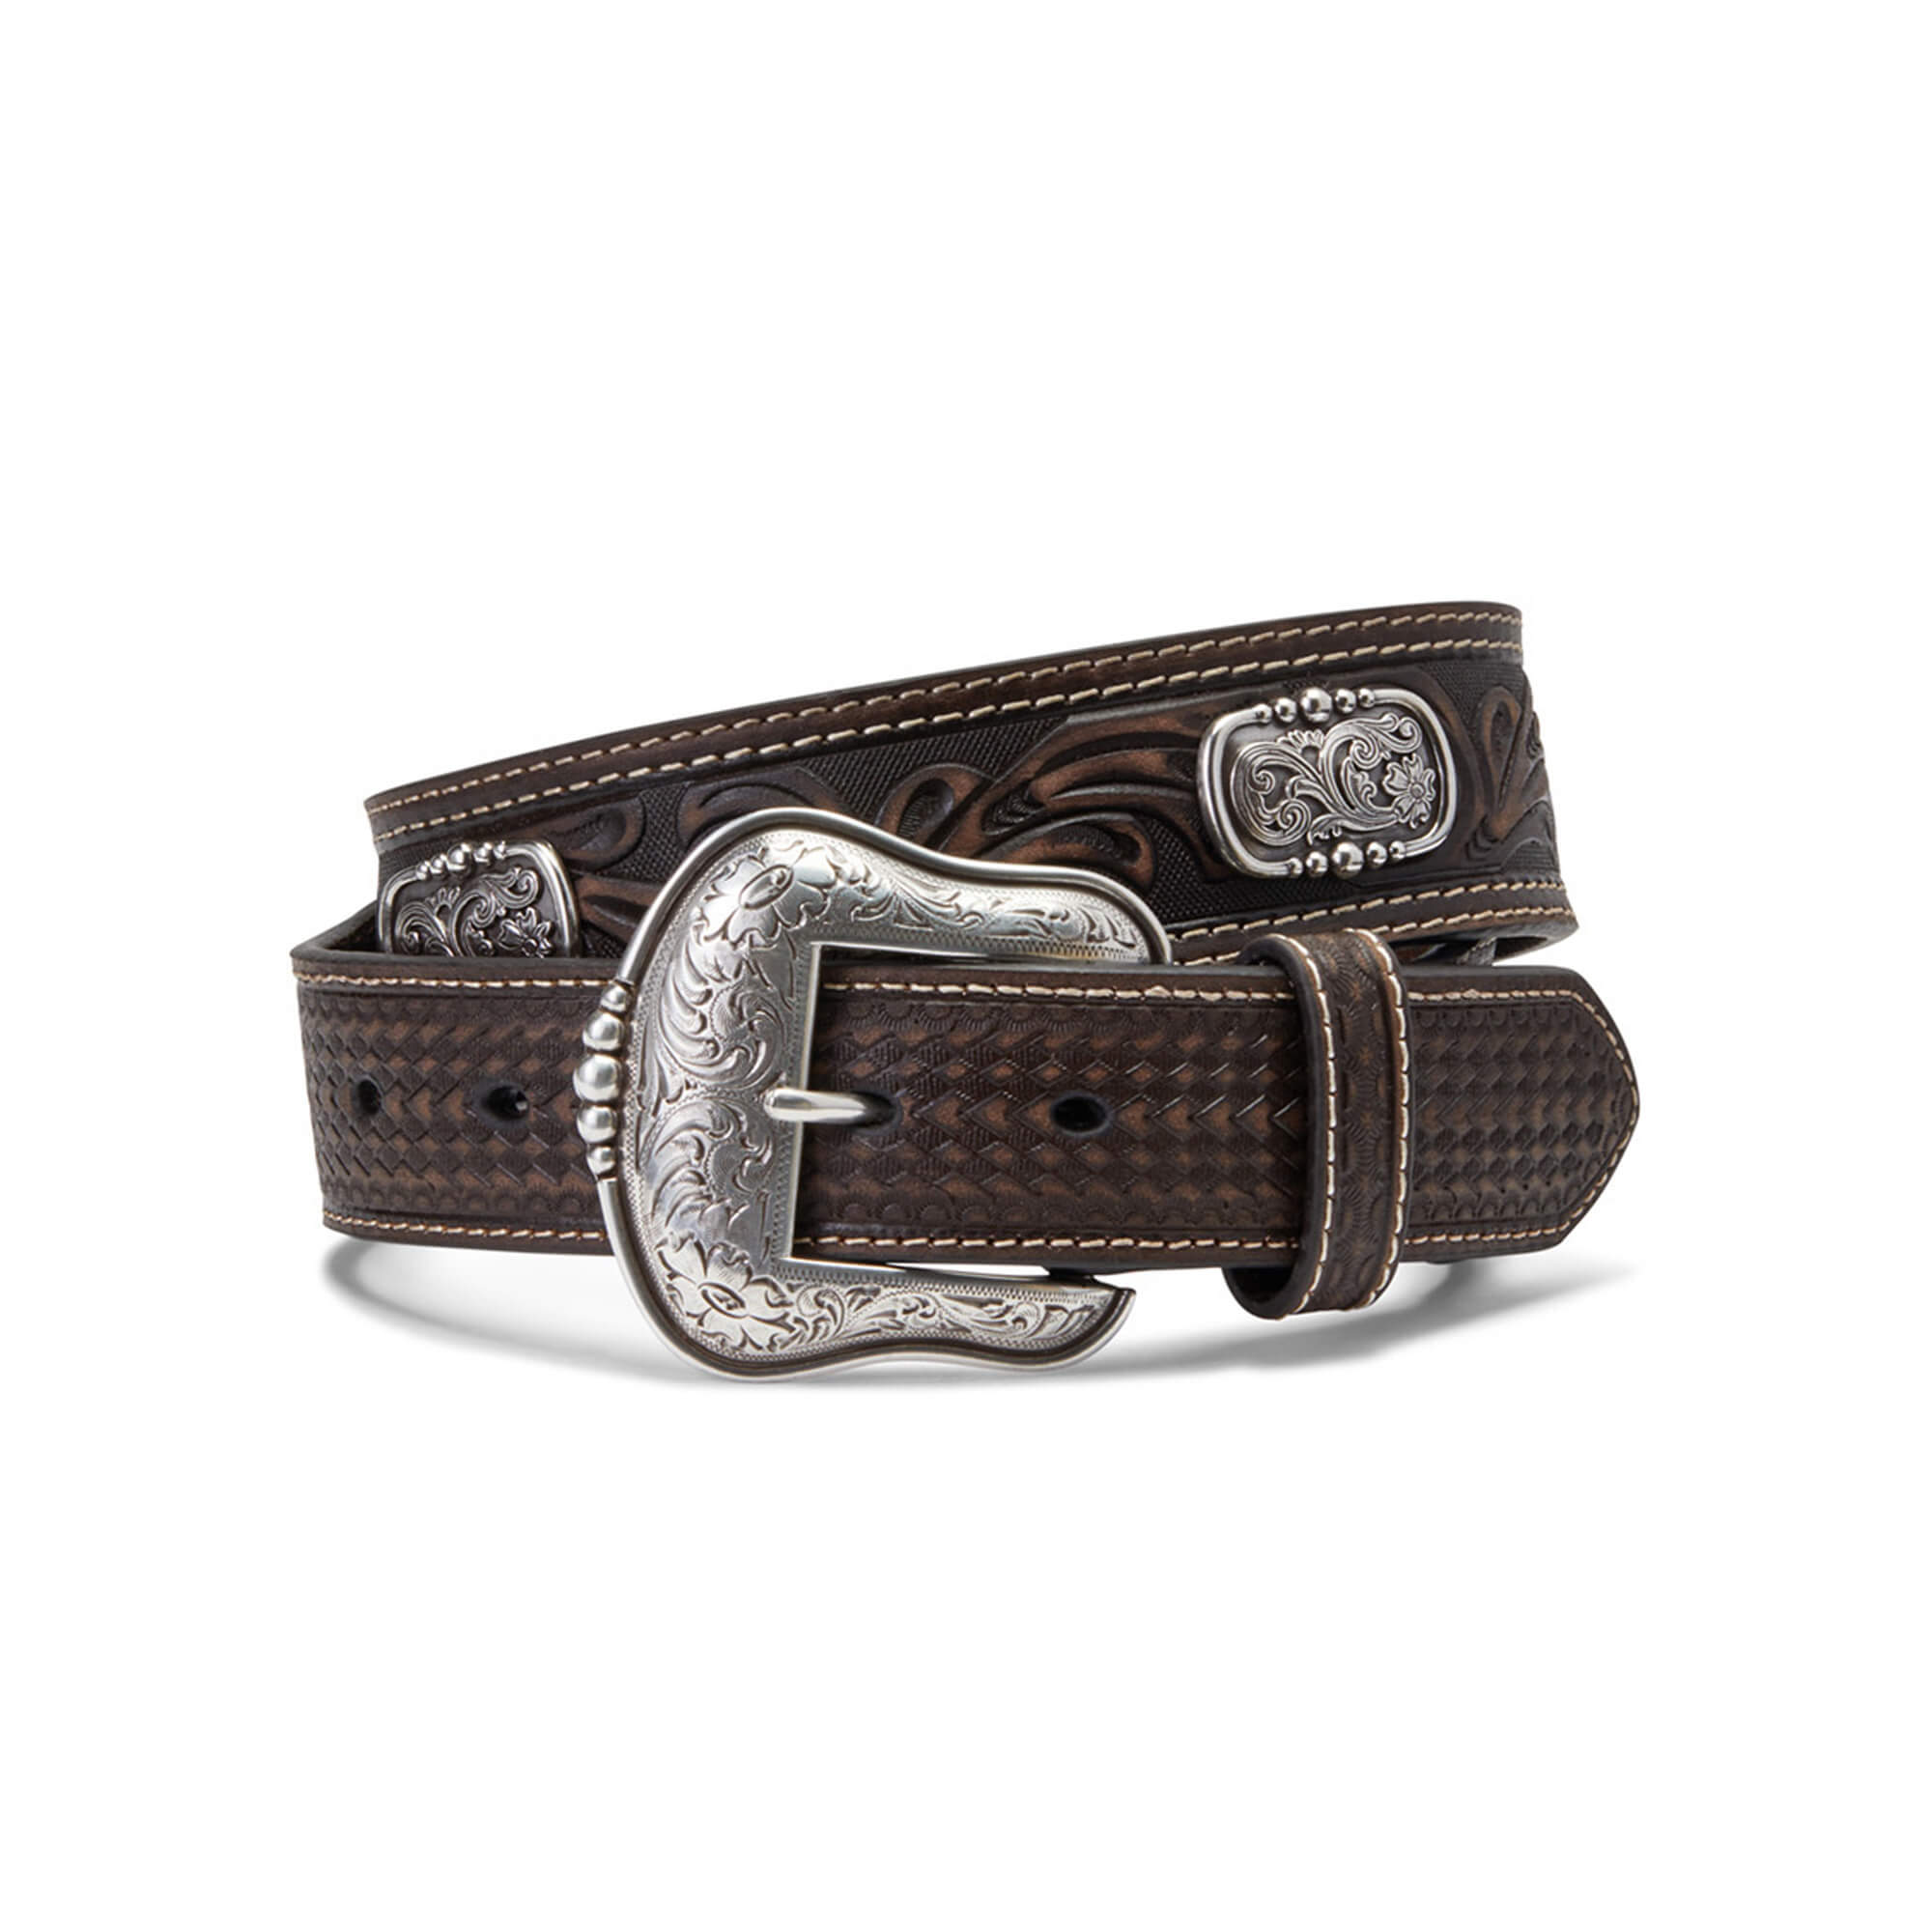 Ariat Western Belt Buckle - Men's Belts in Silver